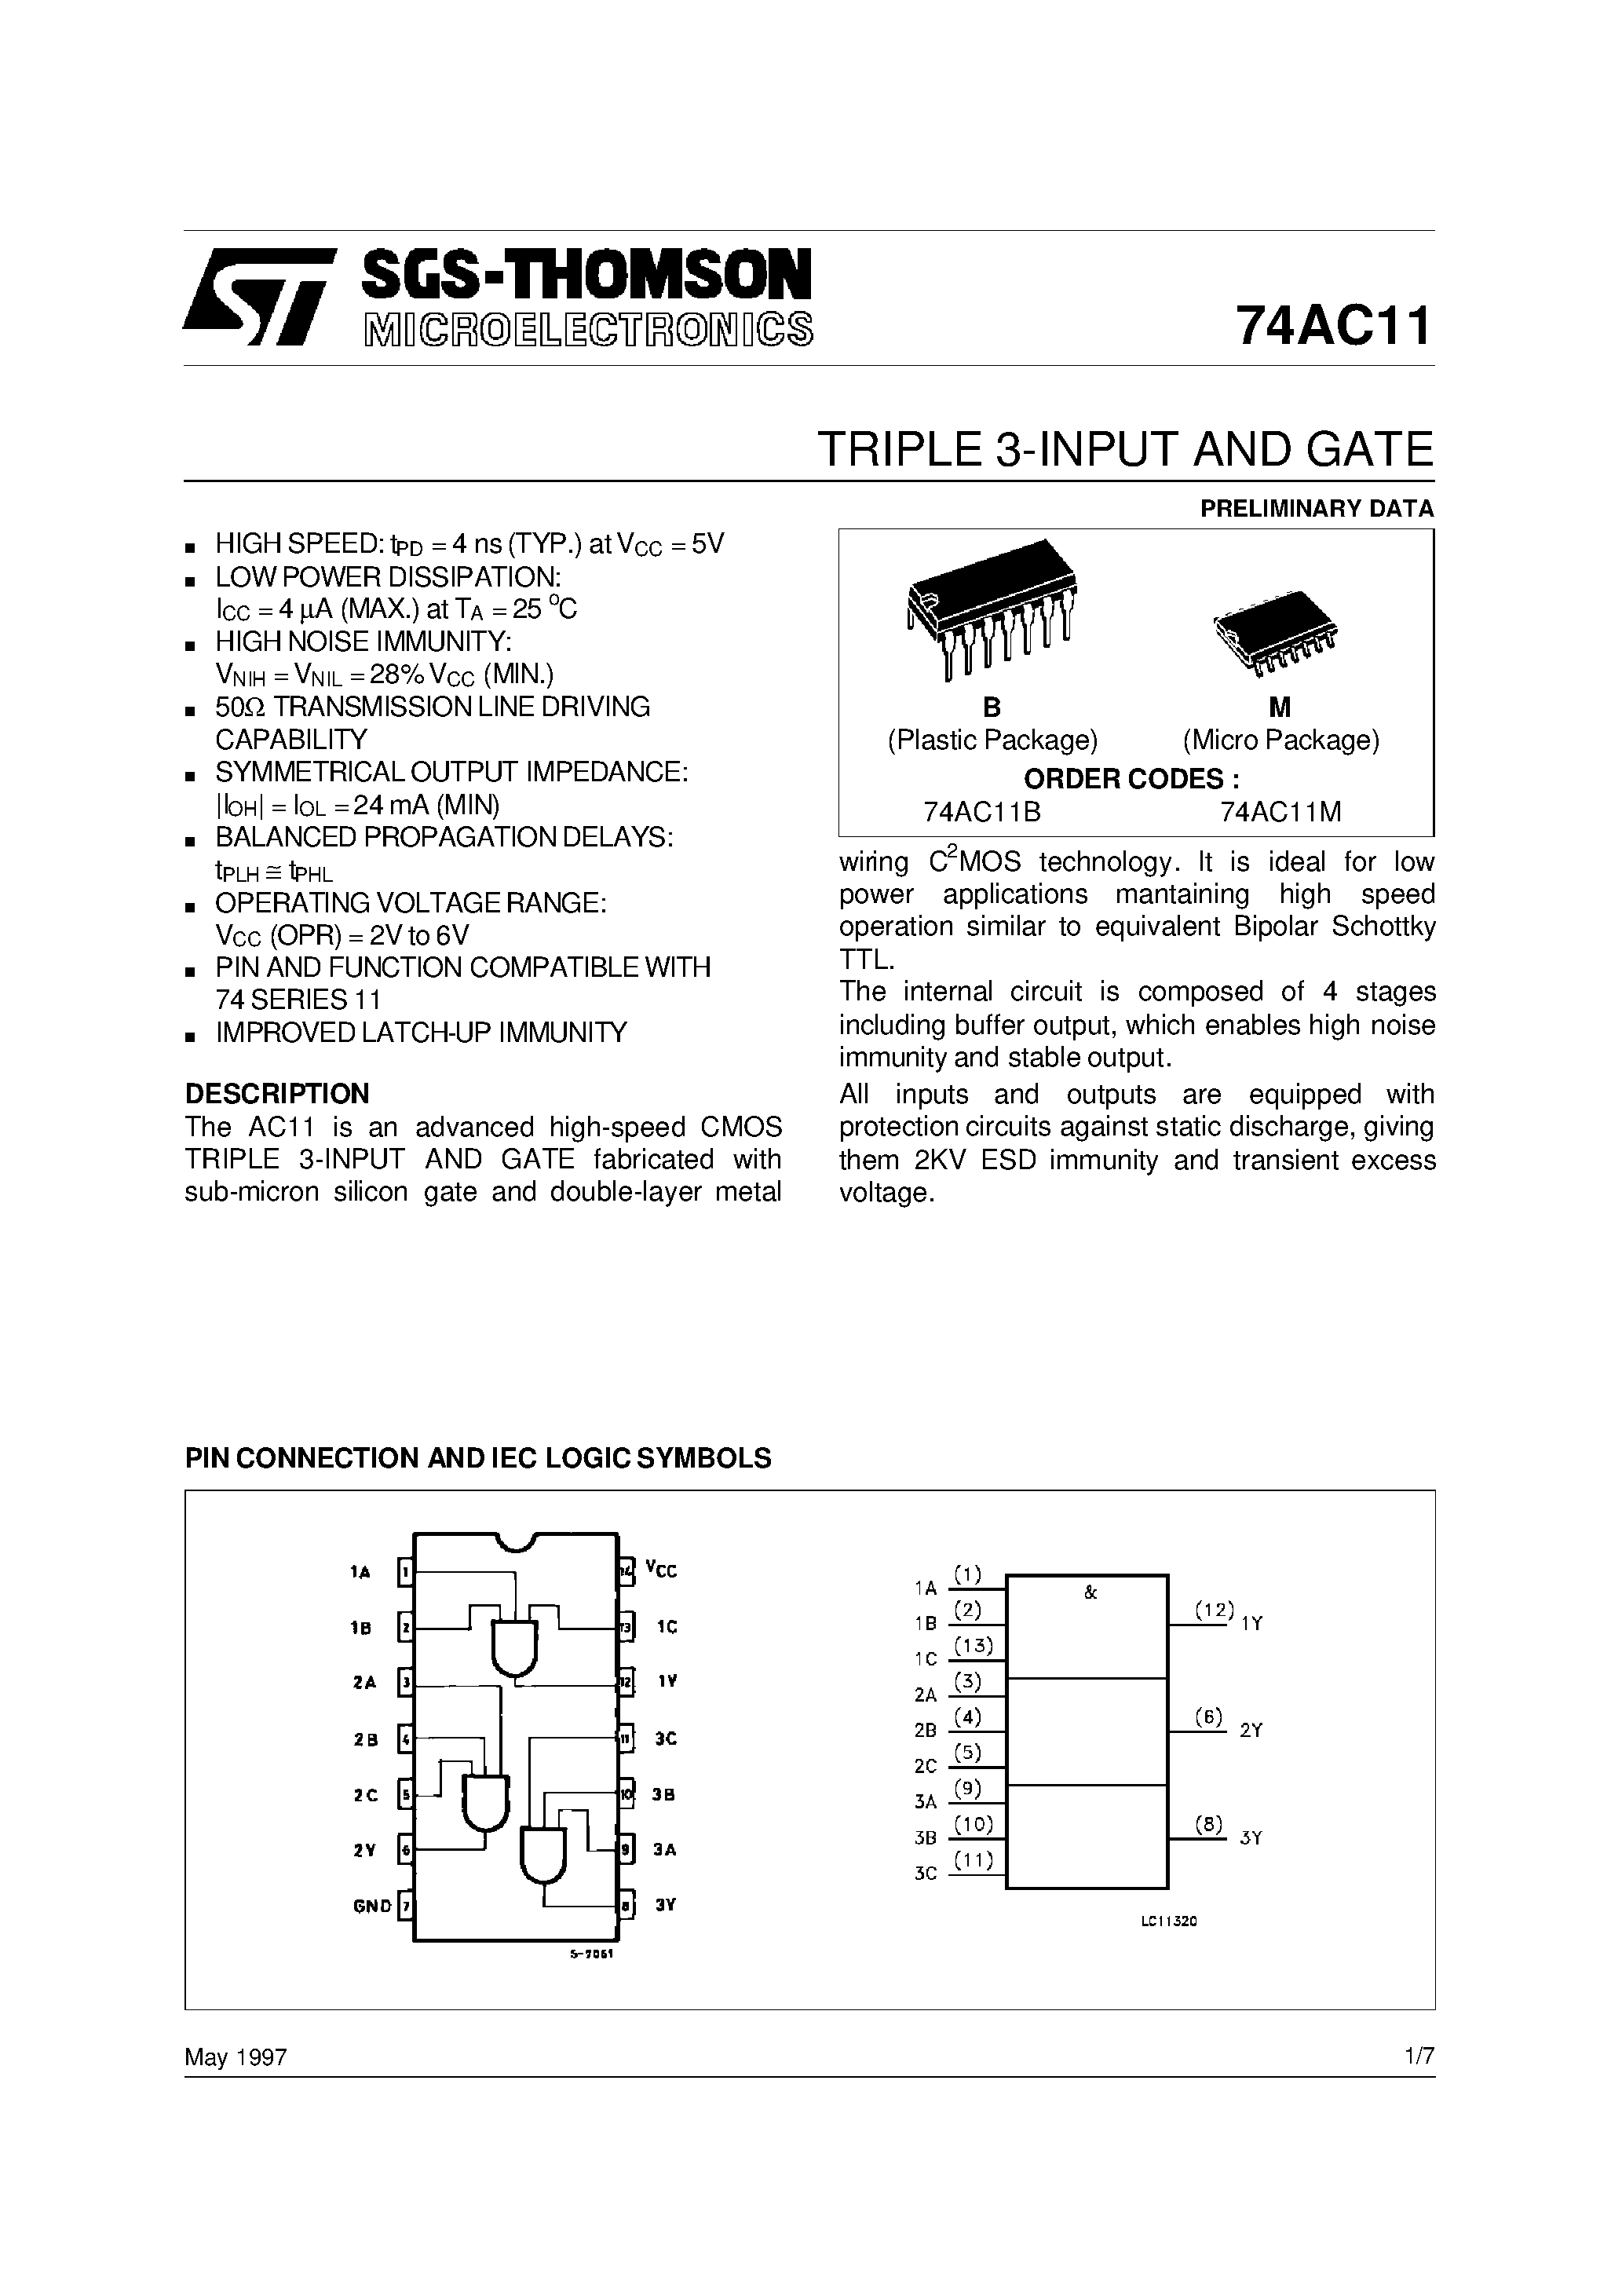 Даташит 74AC11MTC - Triple 3-Input AND Gate страница 1